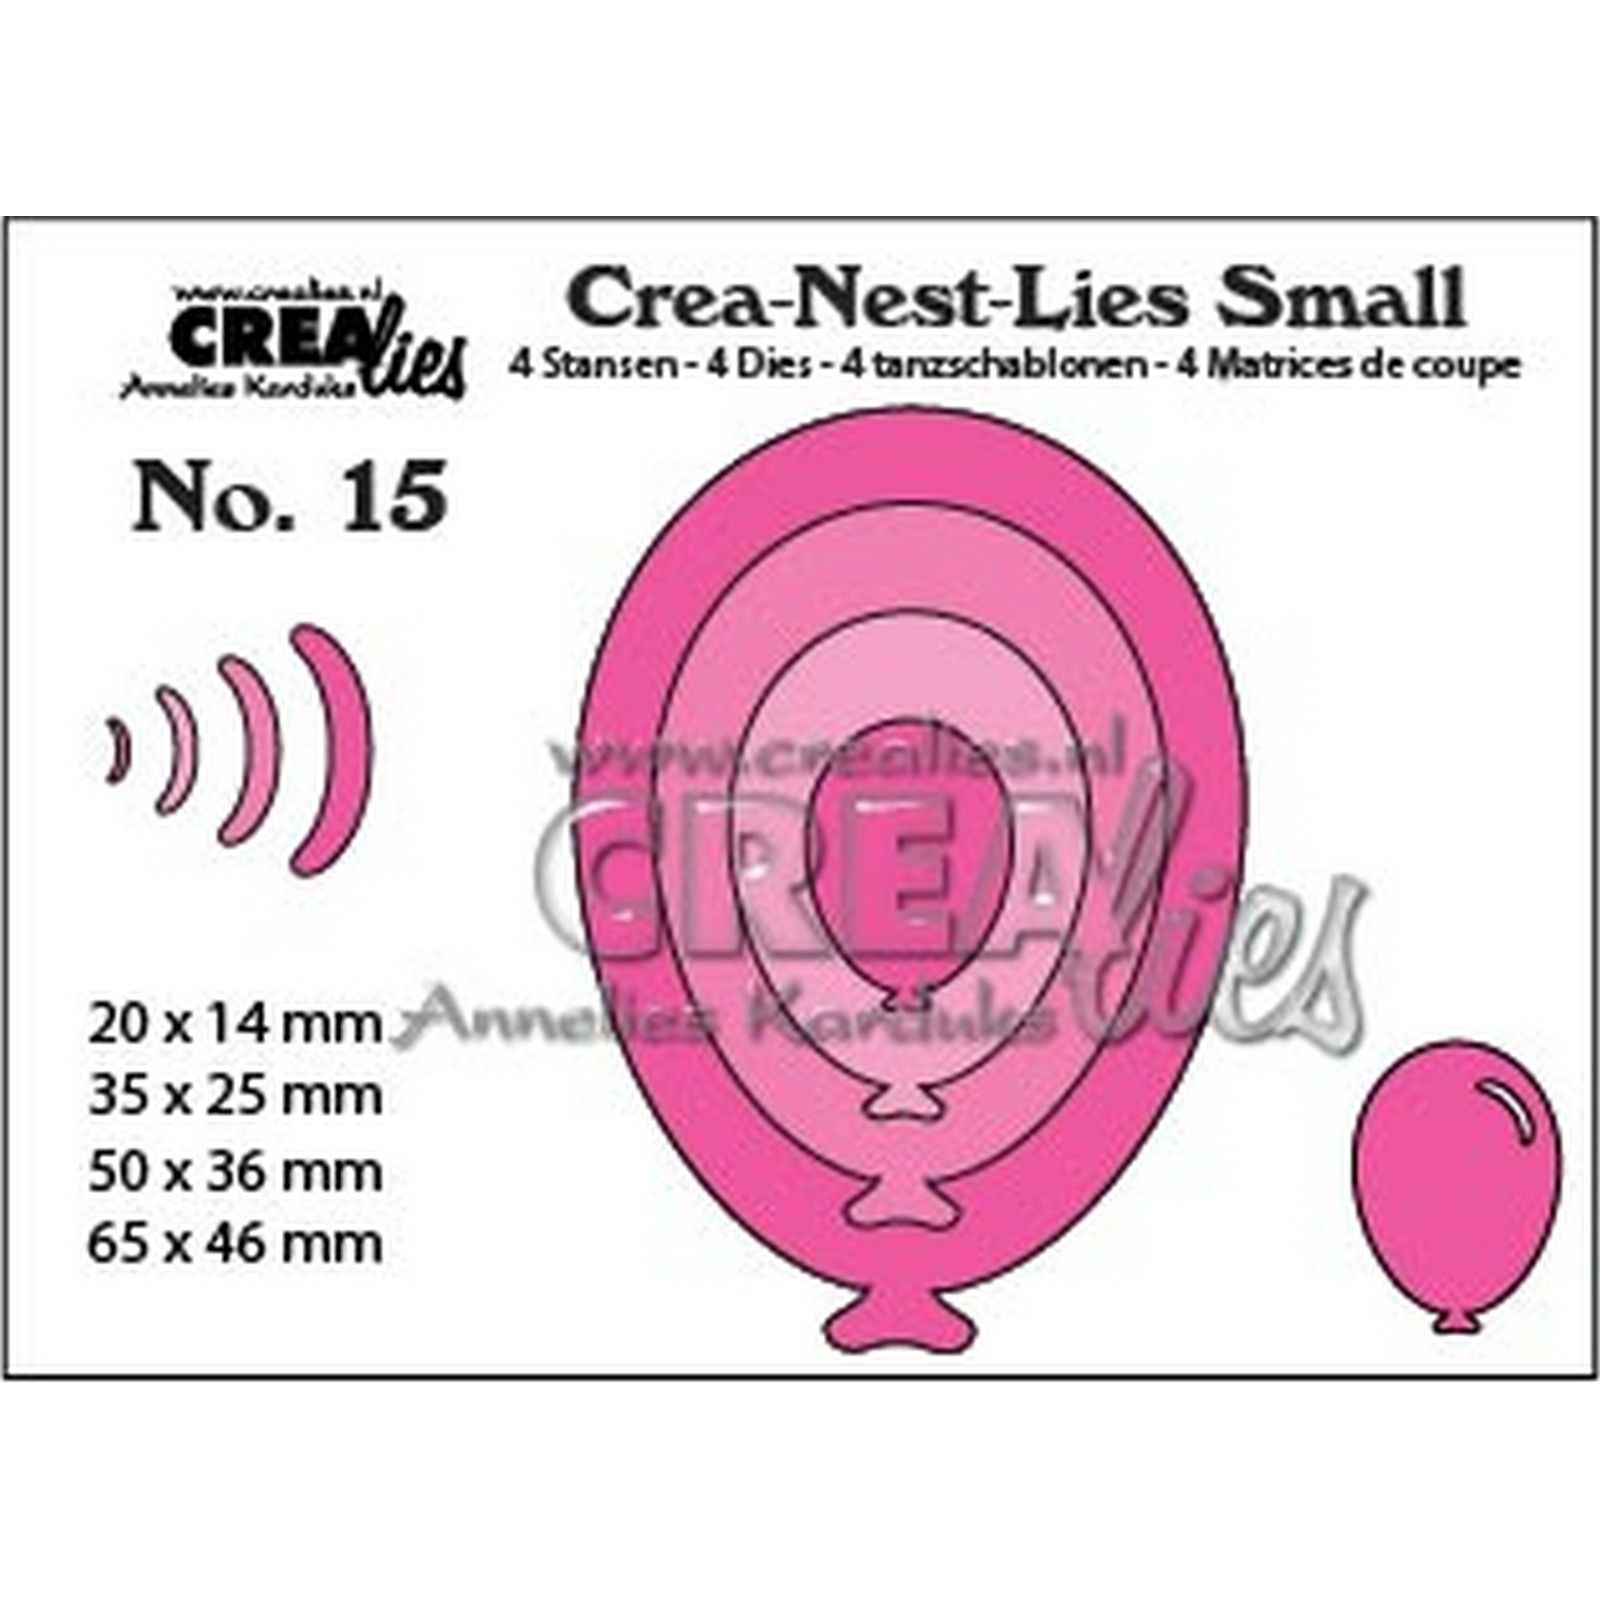 Crealies • Crea-Nest-Lies Small Oval balloons 4x